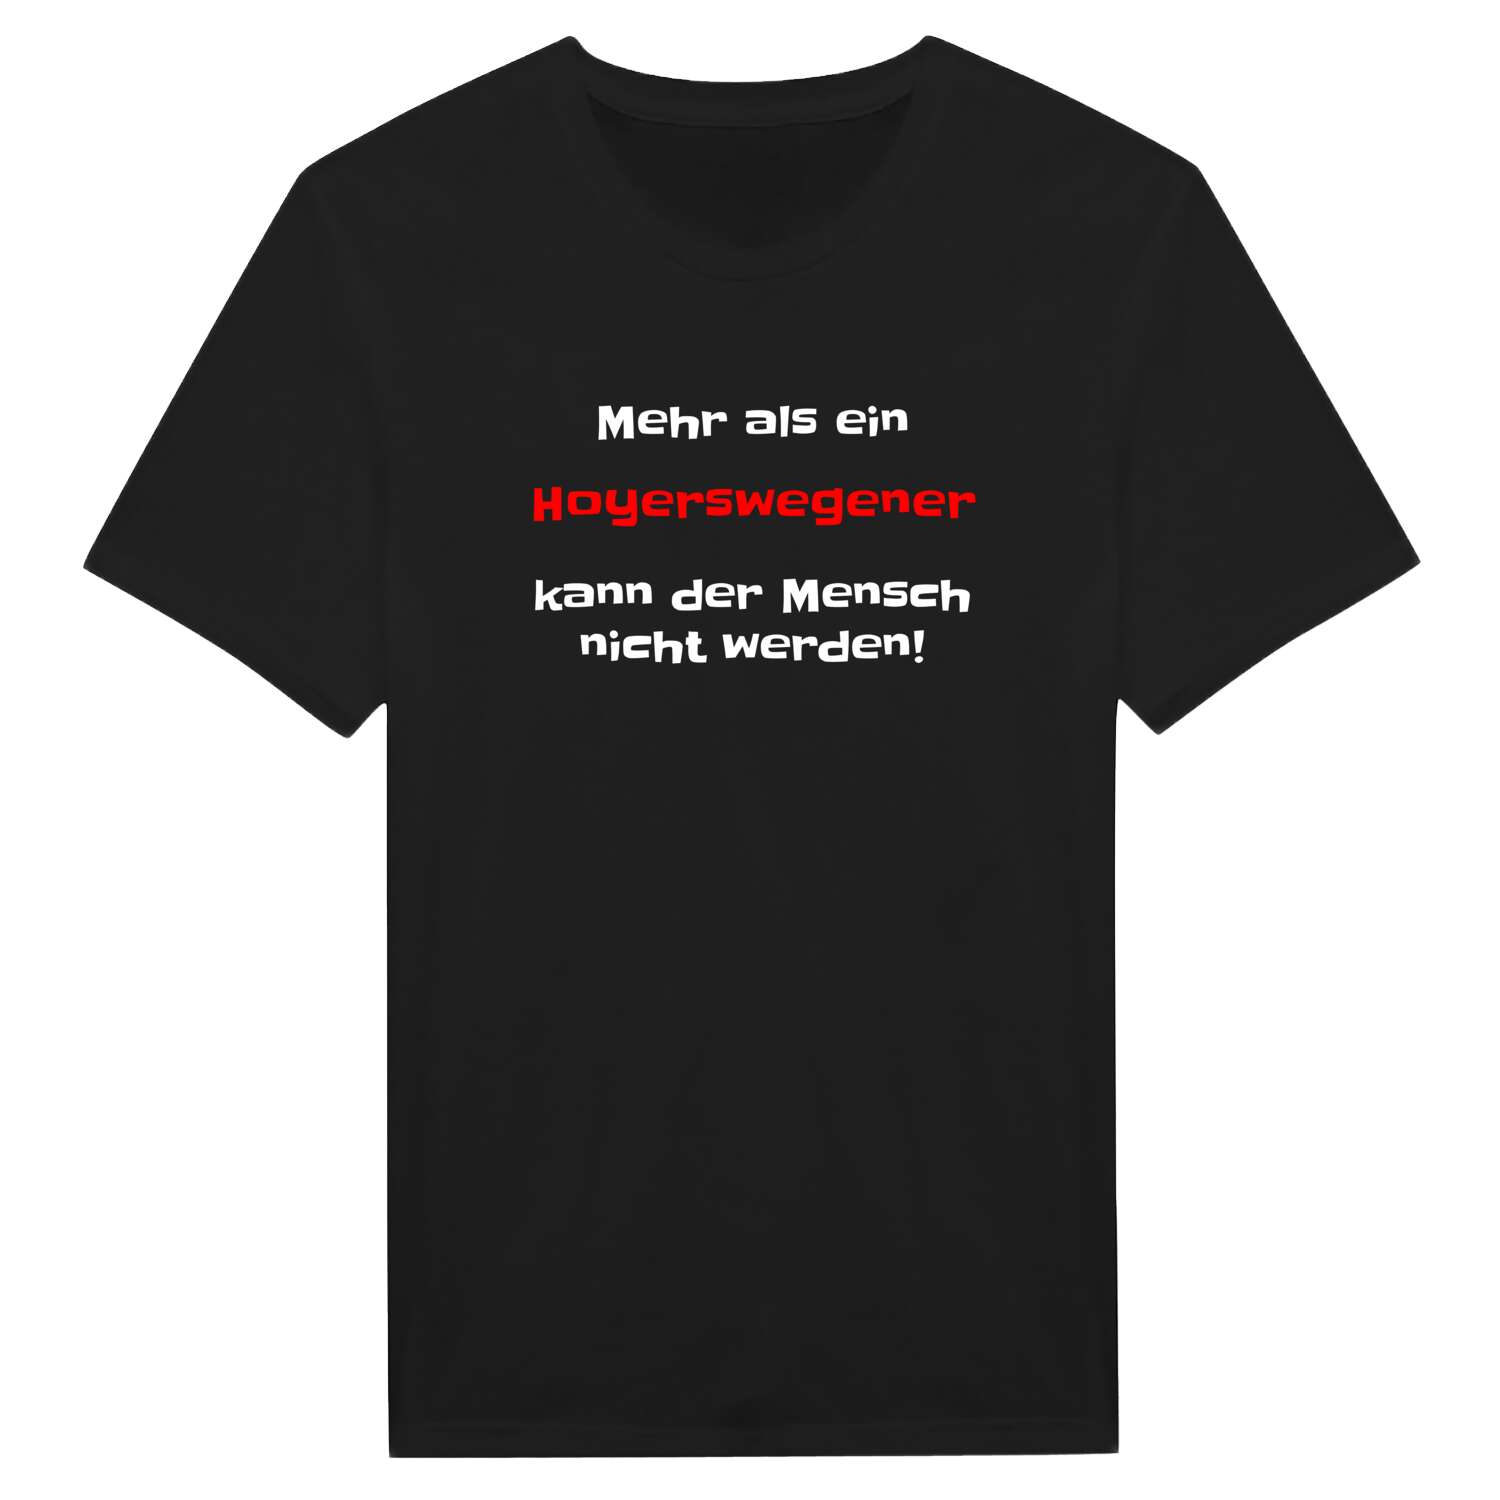 Hoyerswege T-Shirt »Mehr als ein«